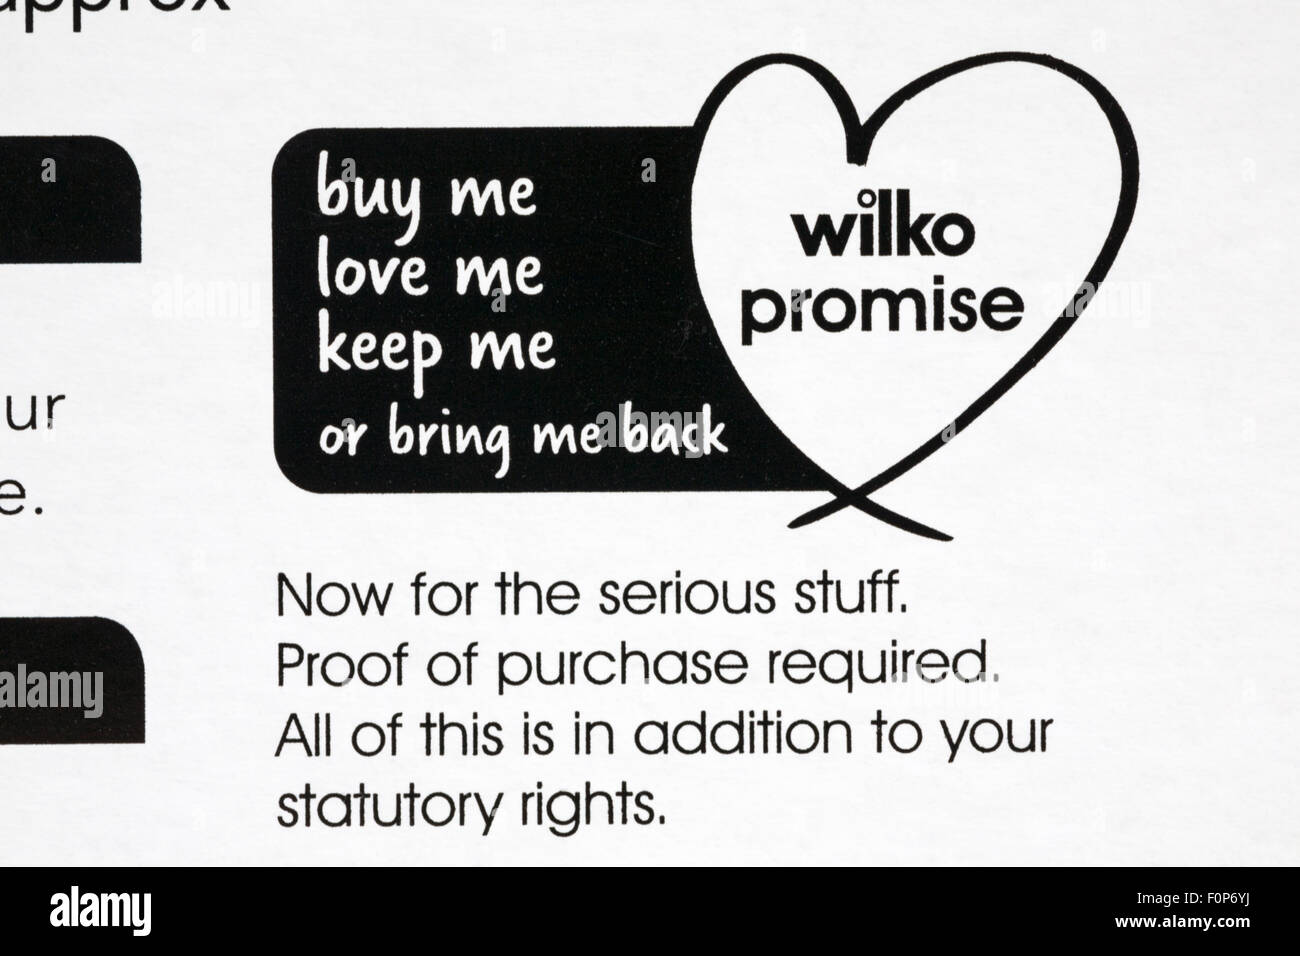 Promessa di wilko - buy me love me tenere me o mi portano indietro Foto Stock